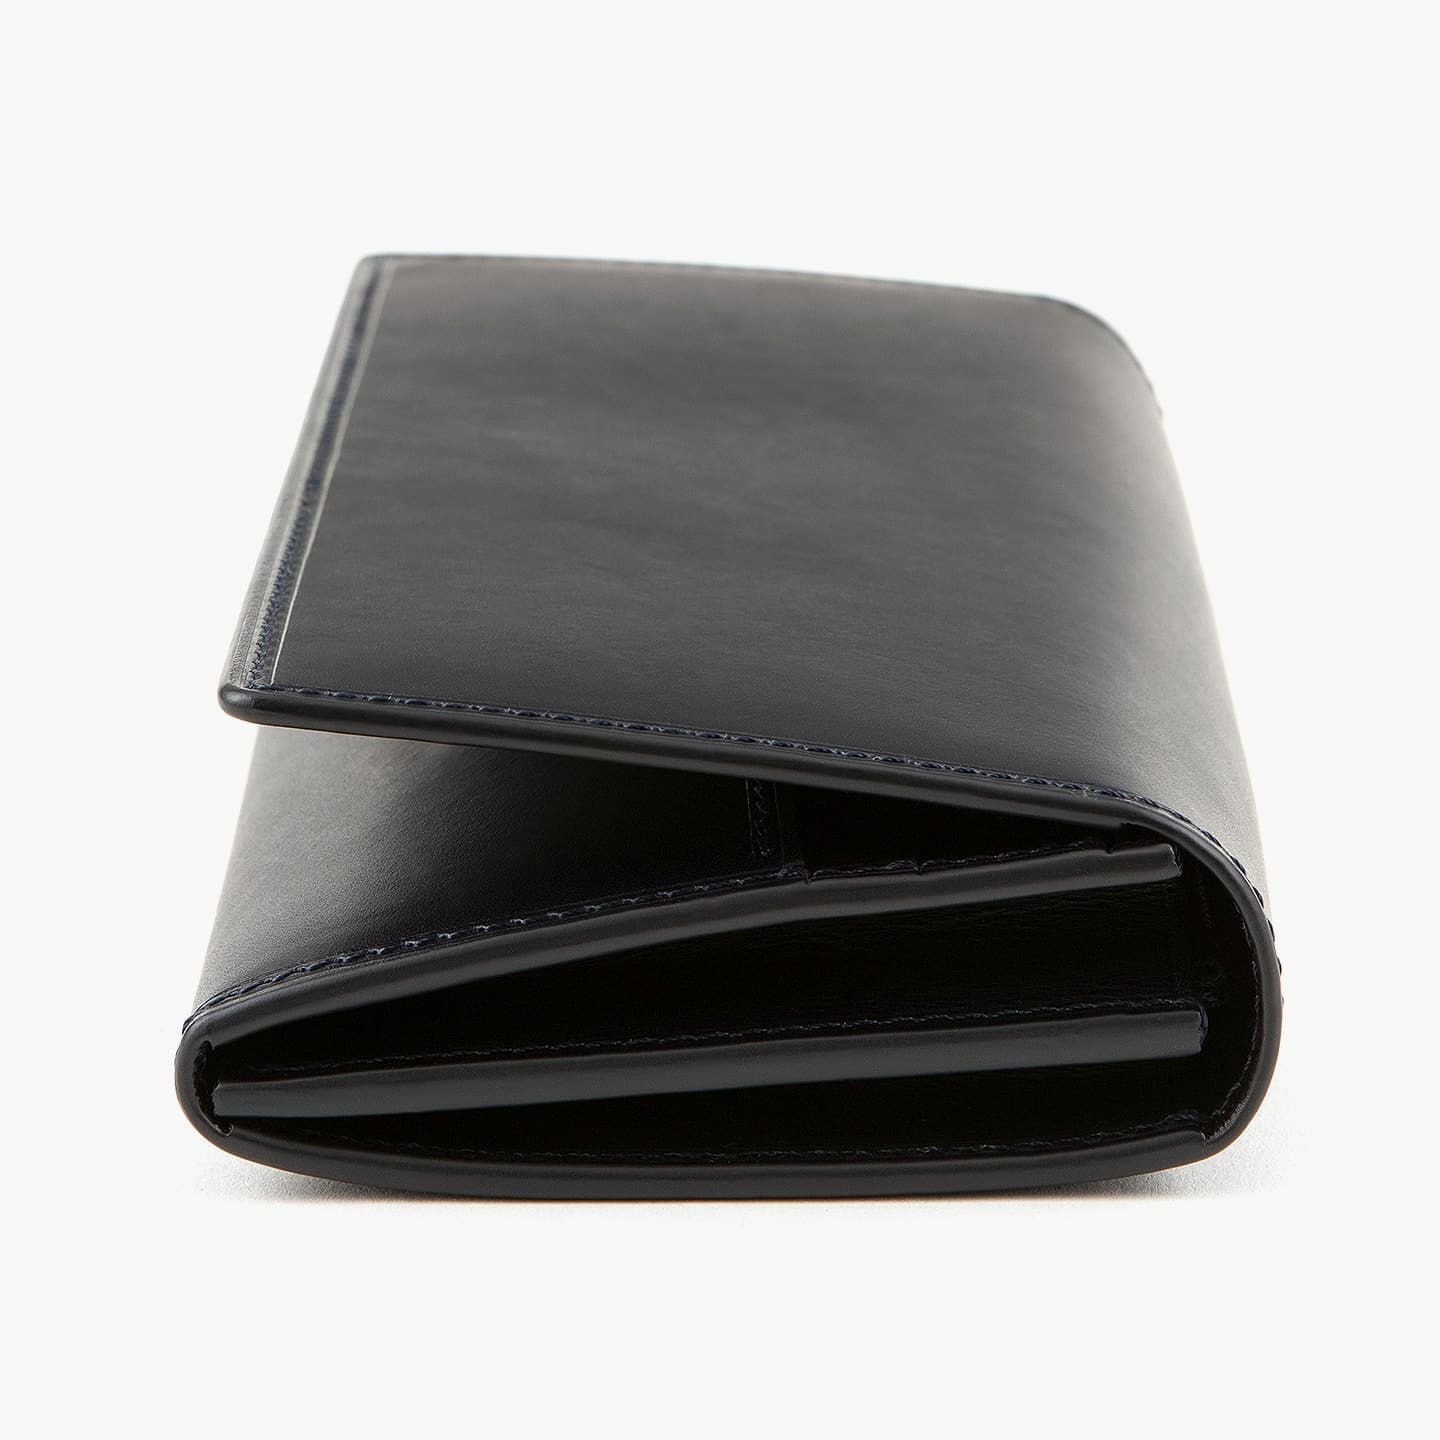 ブッテーロ 長財布 | 大人のバッグ・財布・ 長財布 など拘りの日本製 